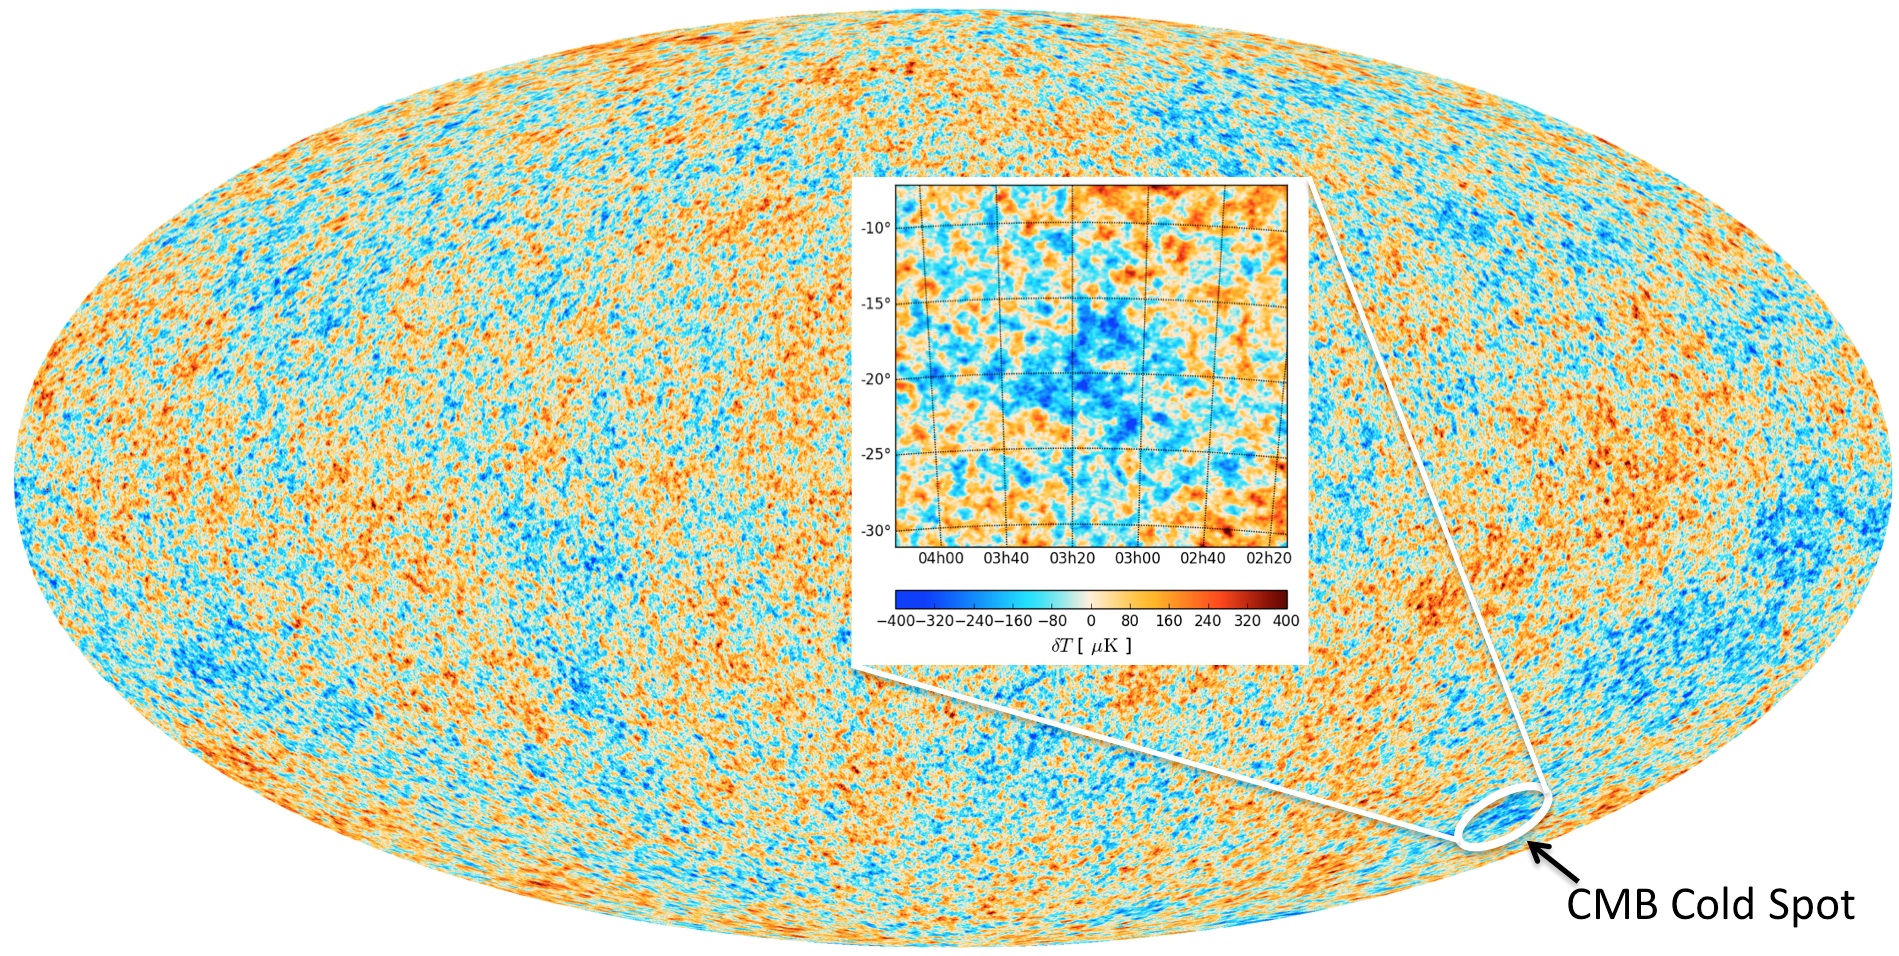 El mapa del universo y del fondo de microondas (CMB) obtenido por el satélite Planck. El rojo representa regiones ligeramente más cálidas y el azul, las regiones ligeramente más frías. El punto frío (CMB Cold Spot) se muestra en la inserción y la diferencia de temperatura en la cuadro interior (Imagen: ESA y Durham University).